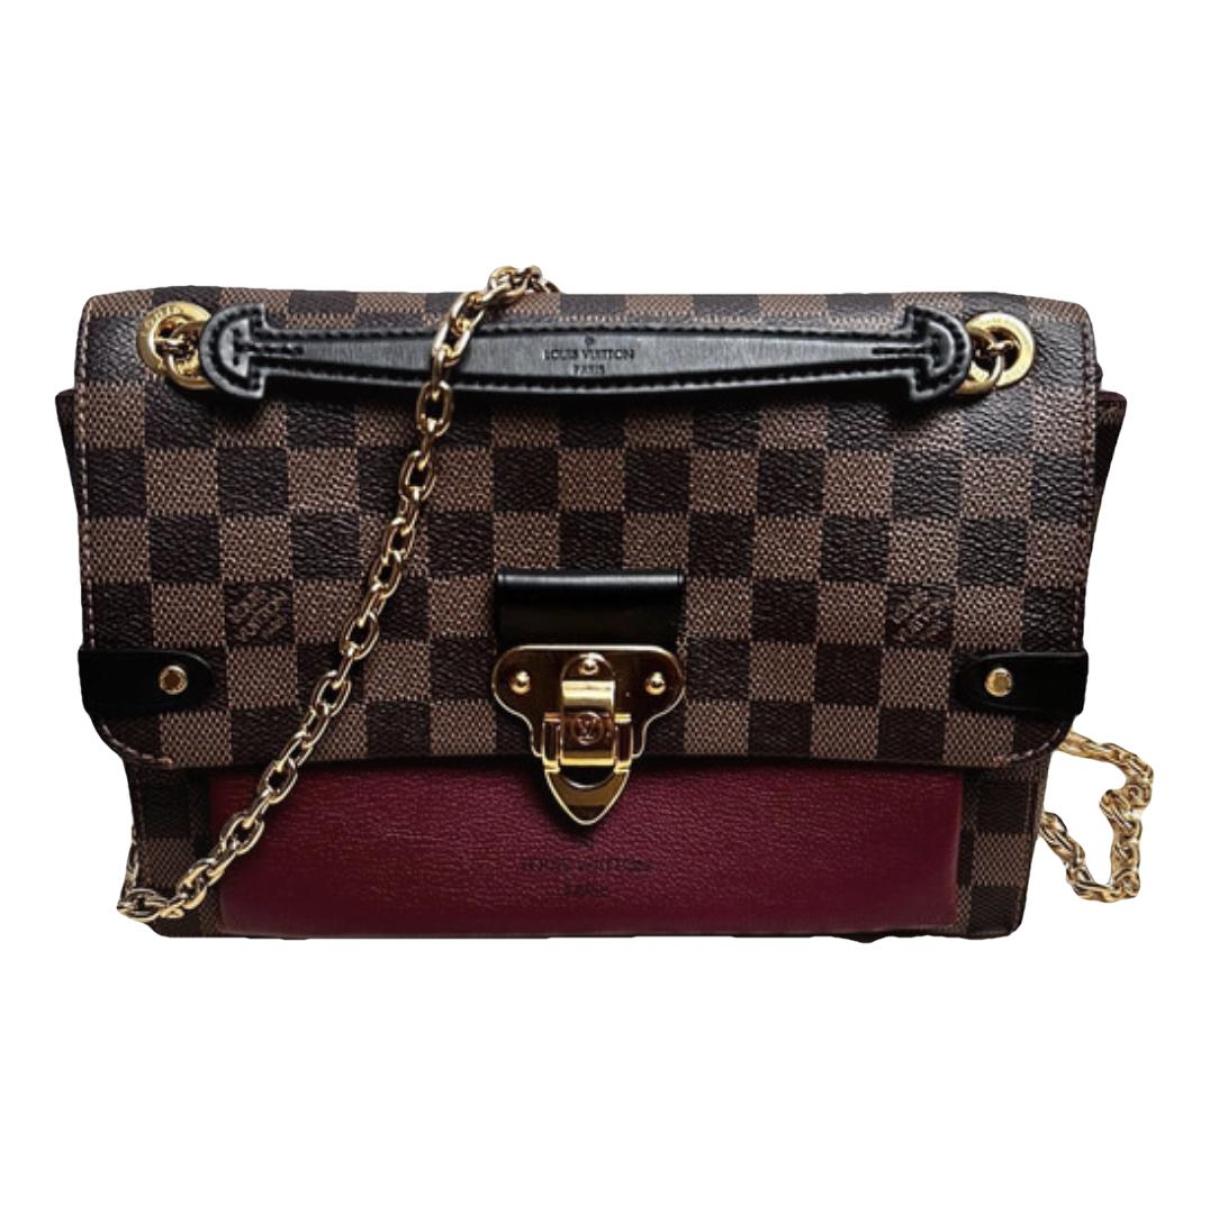 Aurhentic Louis Vuitton bordeaux brown canvas leather tote shop school book  bag